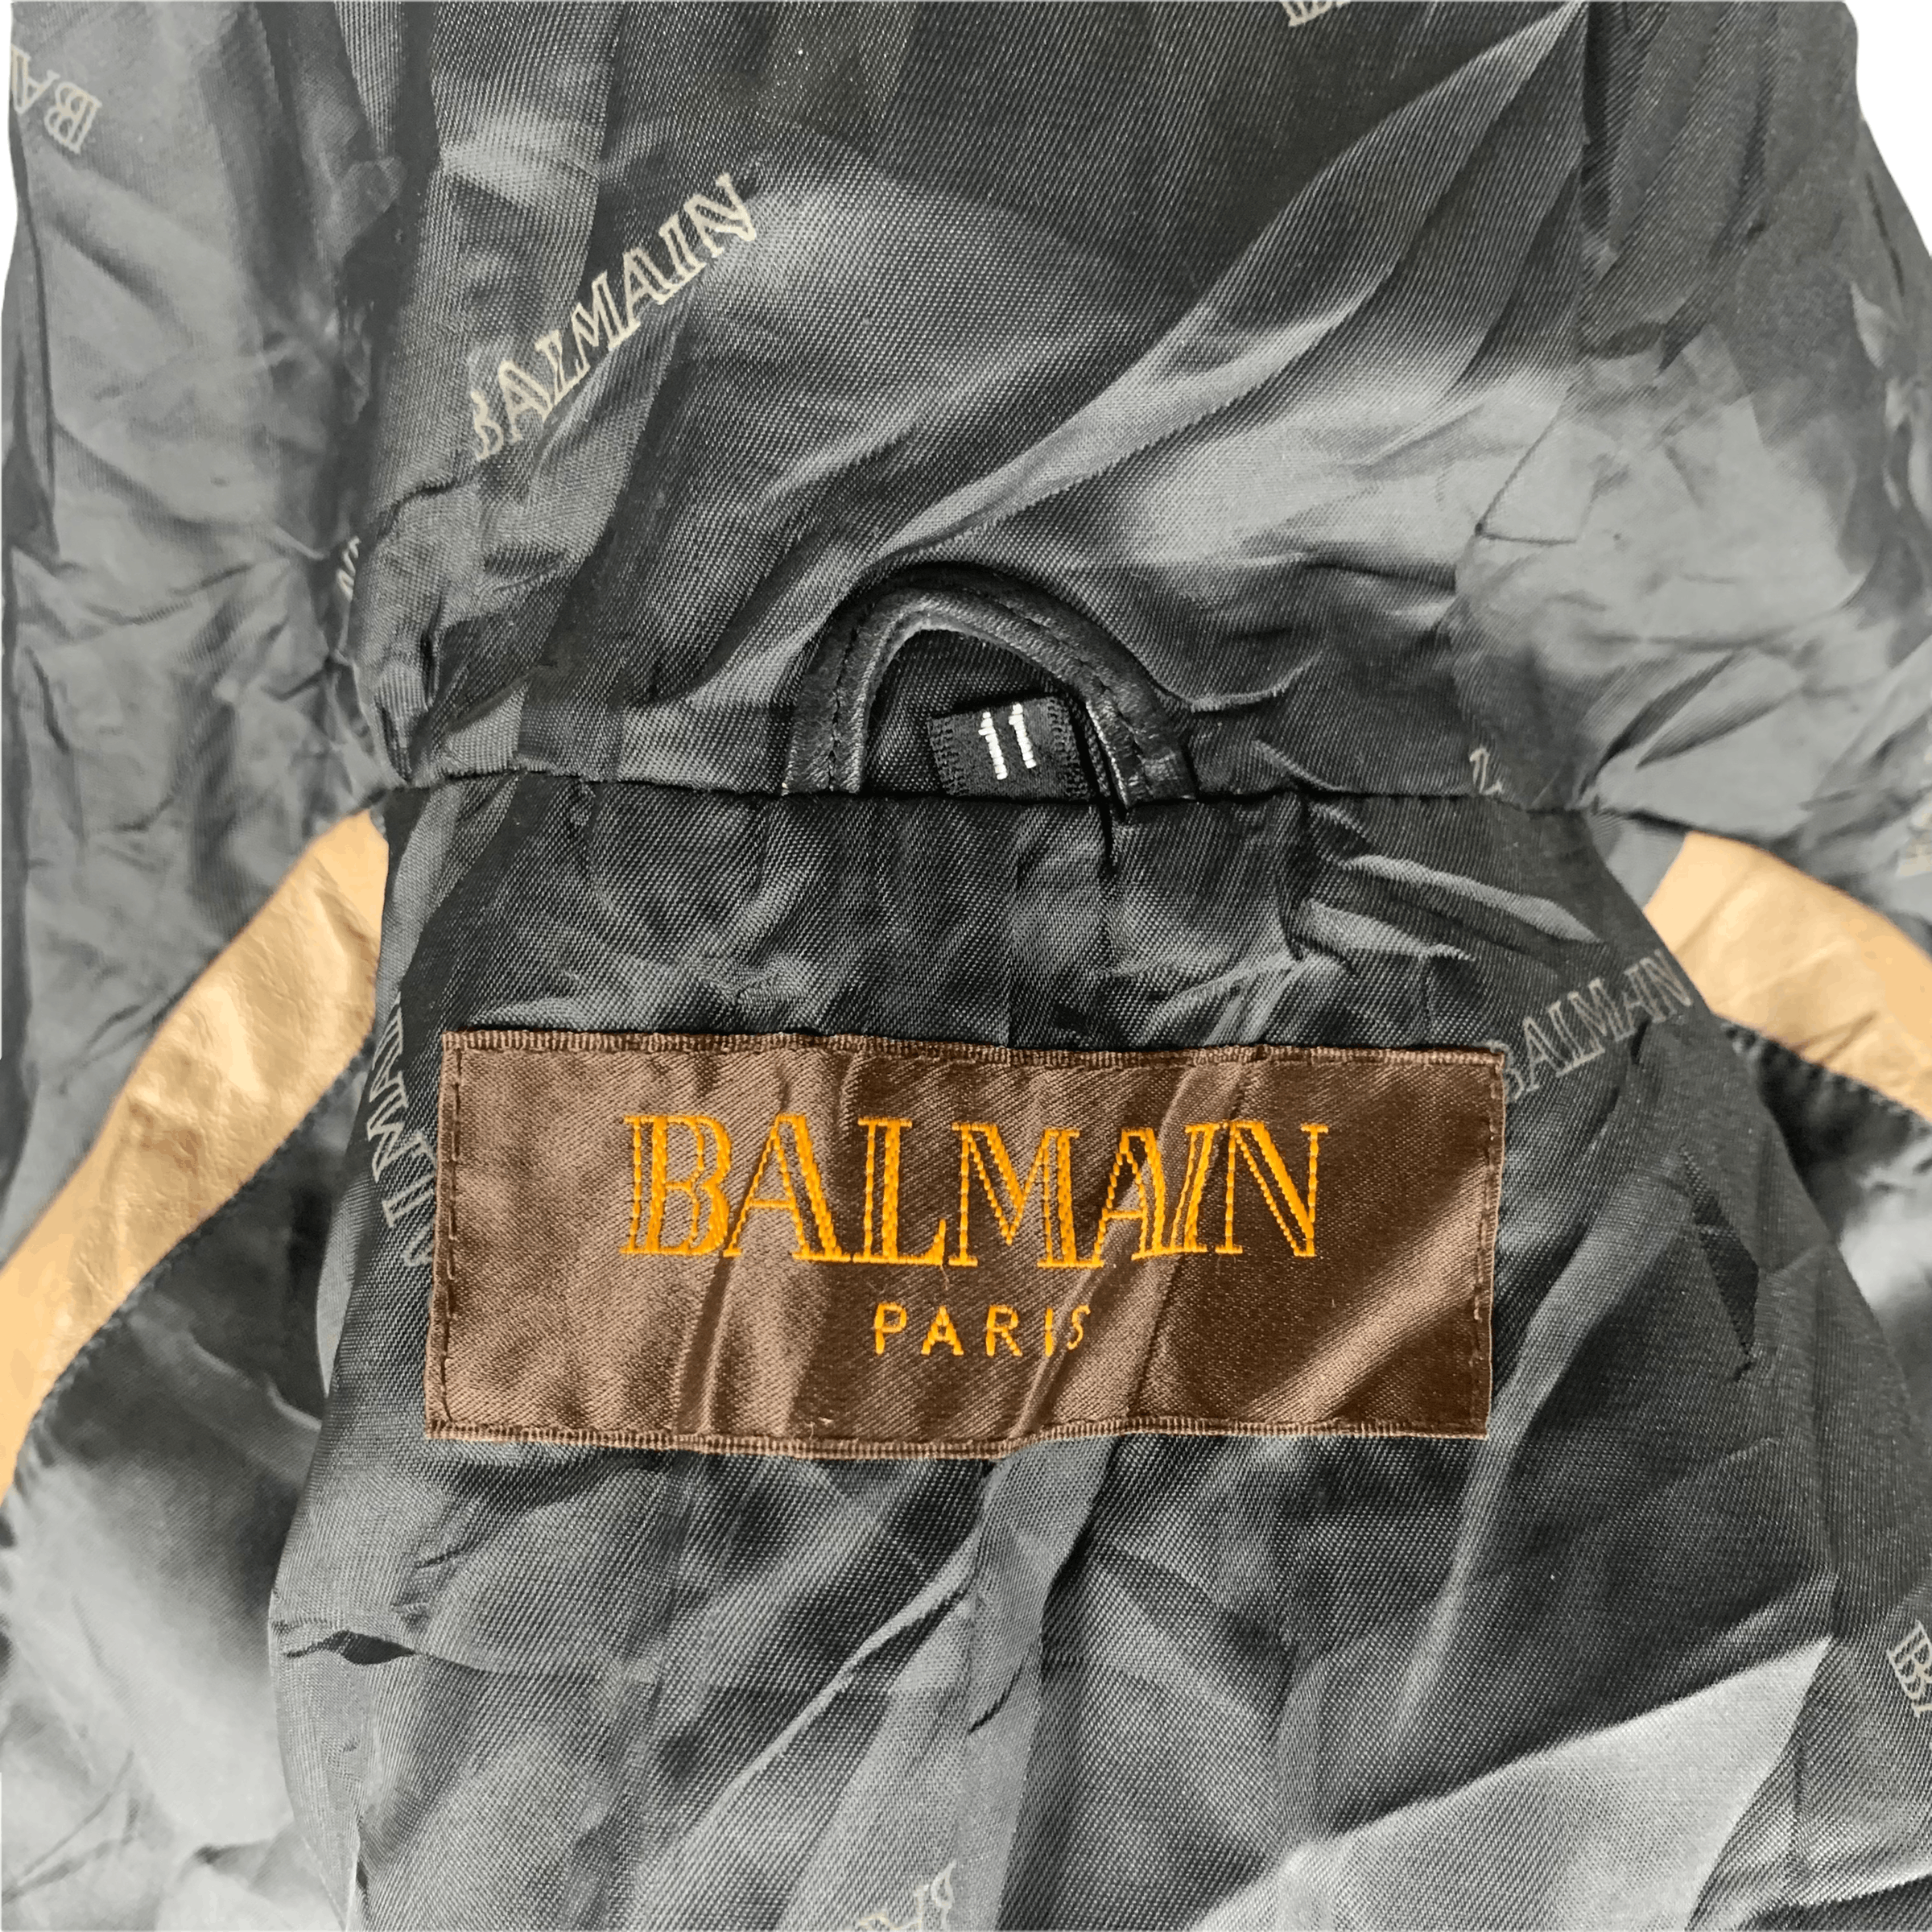 Balmain Paris Leather Hooded Long Vest #3542-47 - 11